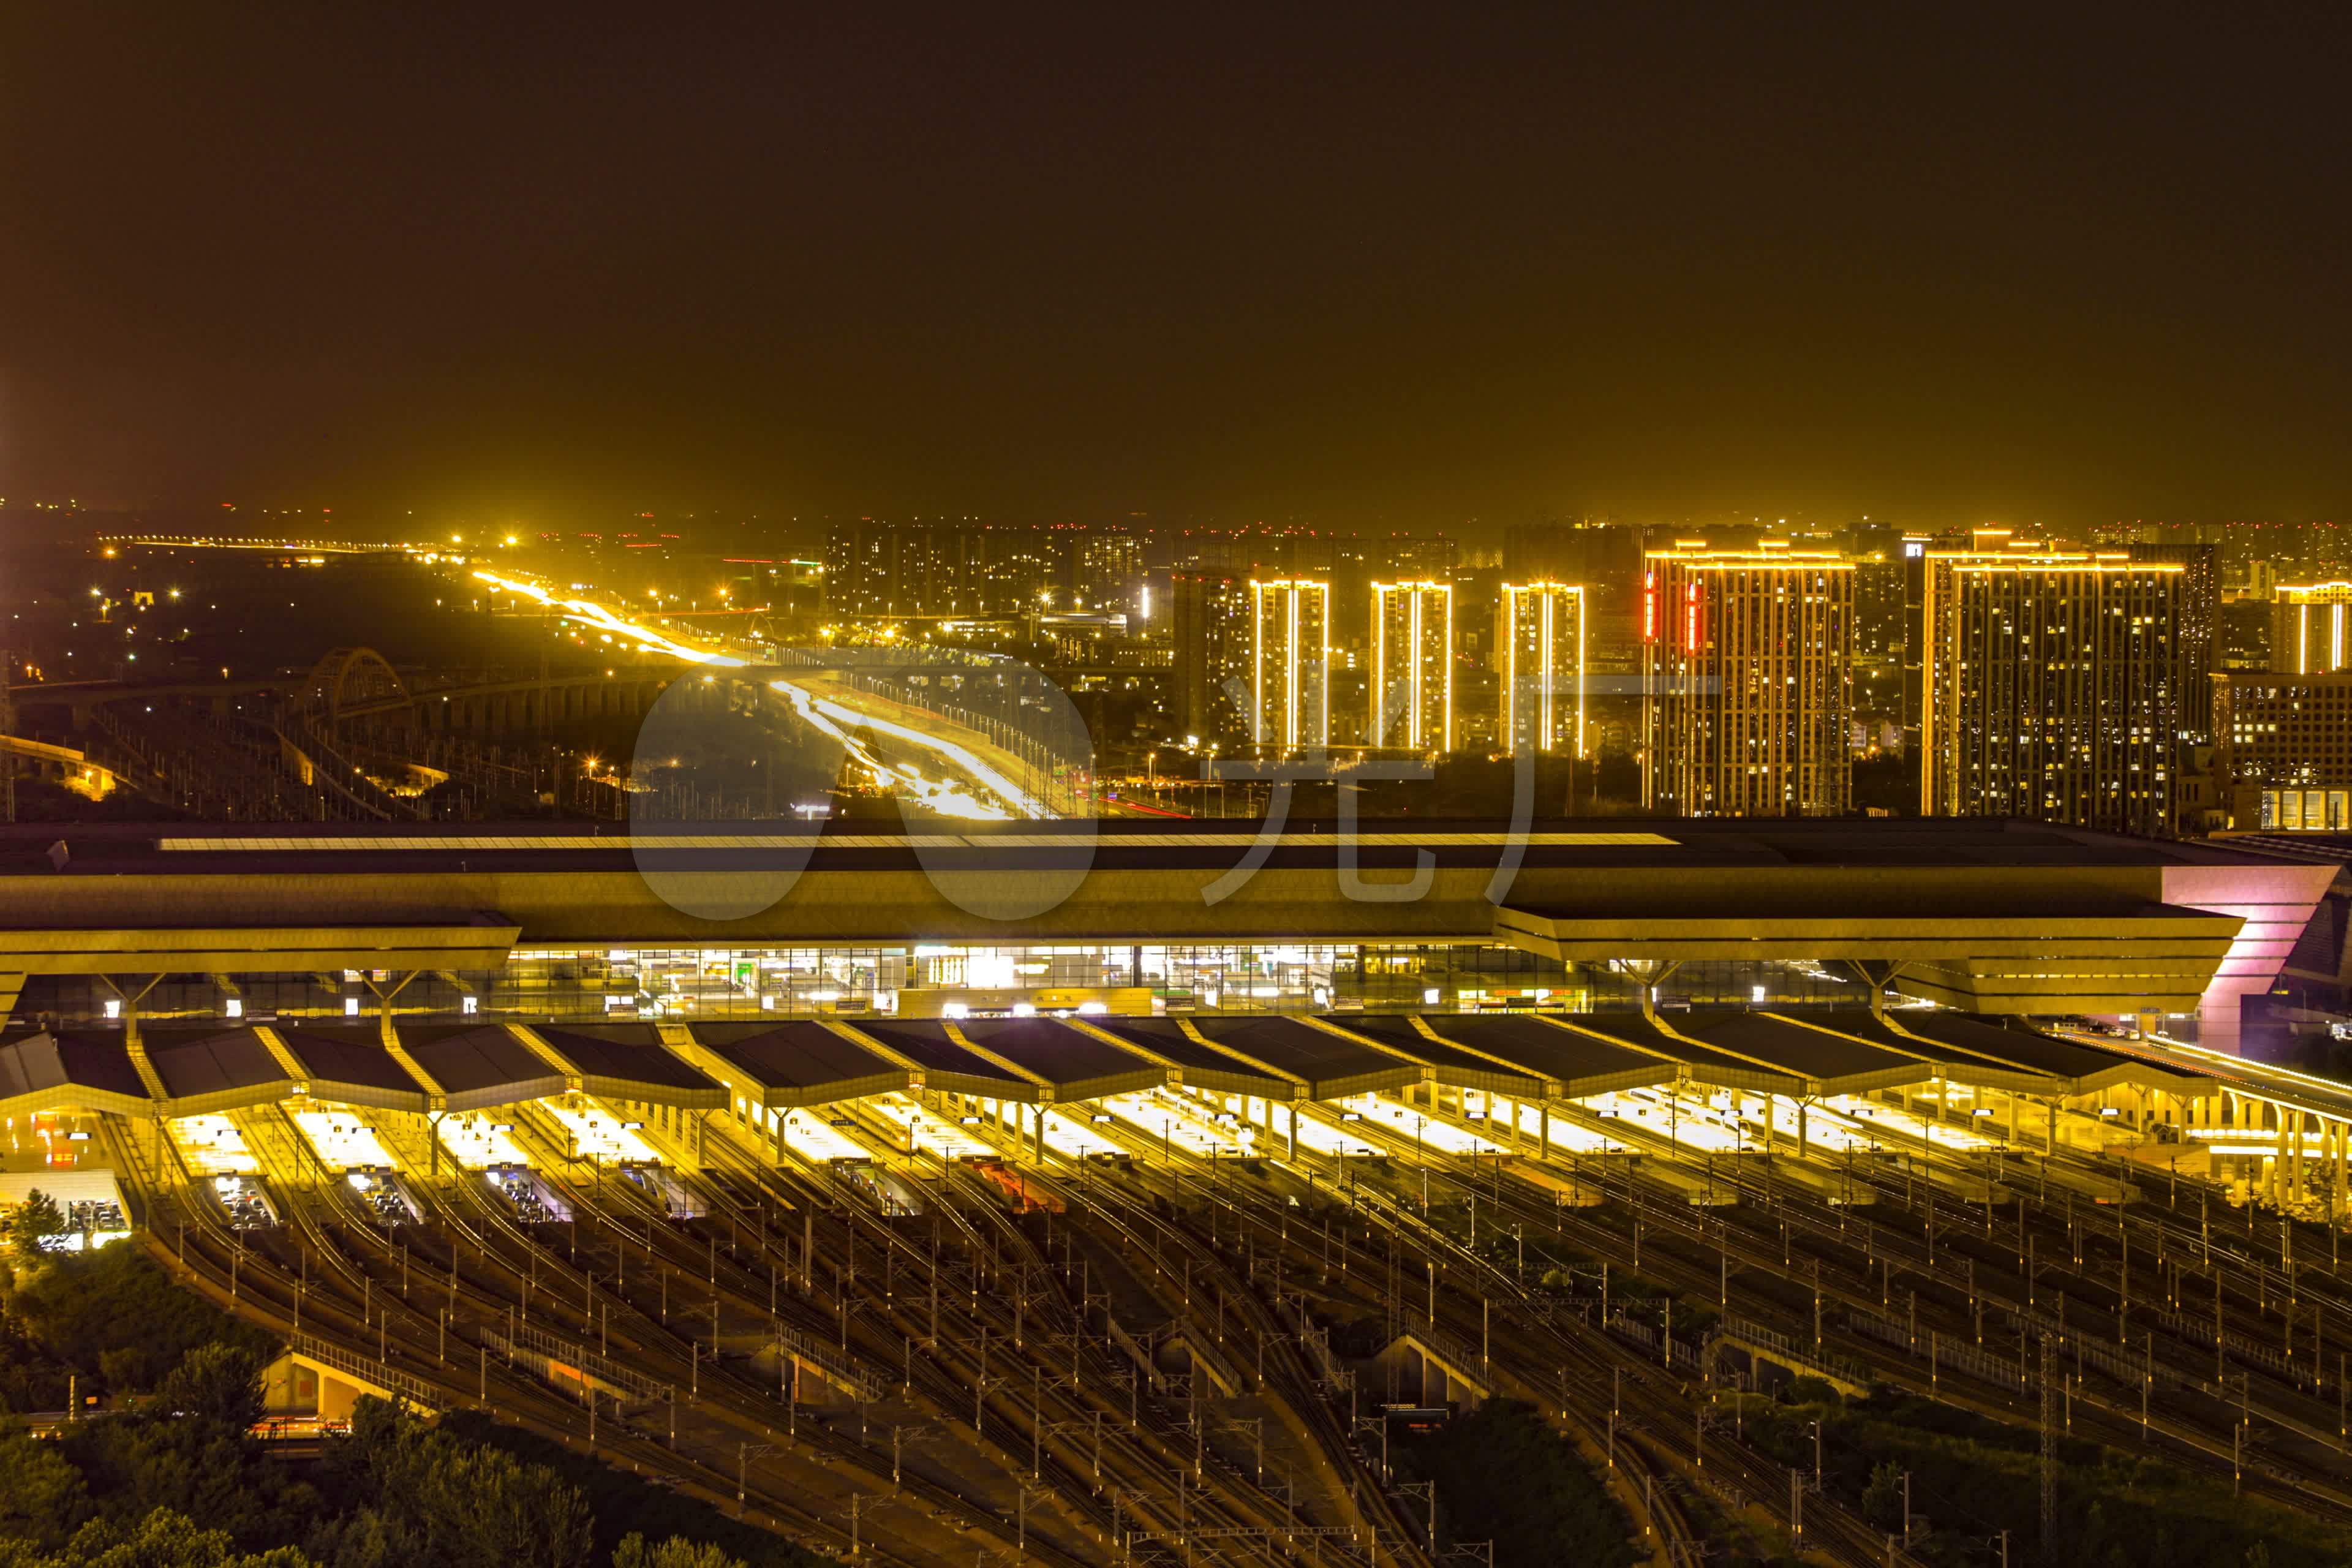 北京夜景图片高清,北京三里屯夜景 - 伤感说说吧